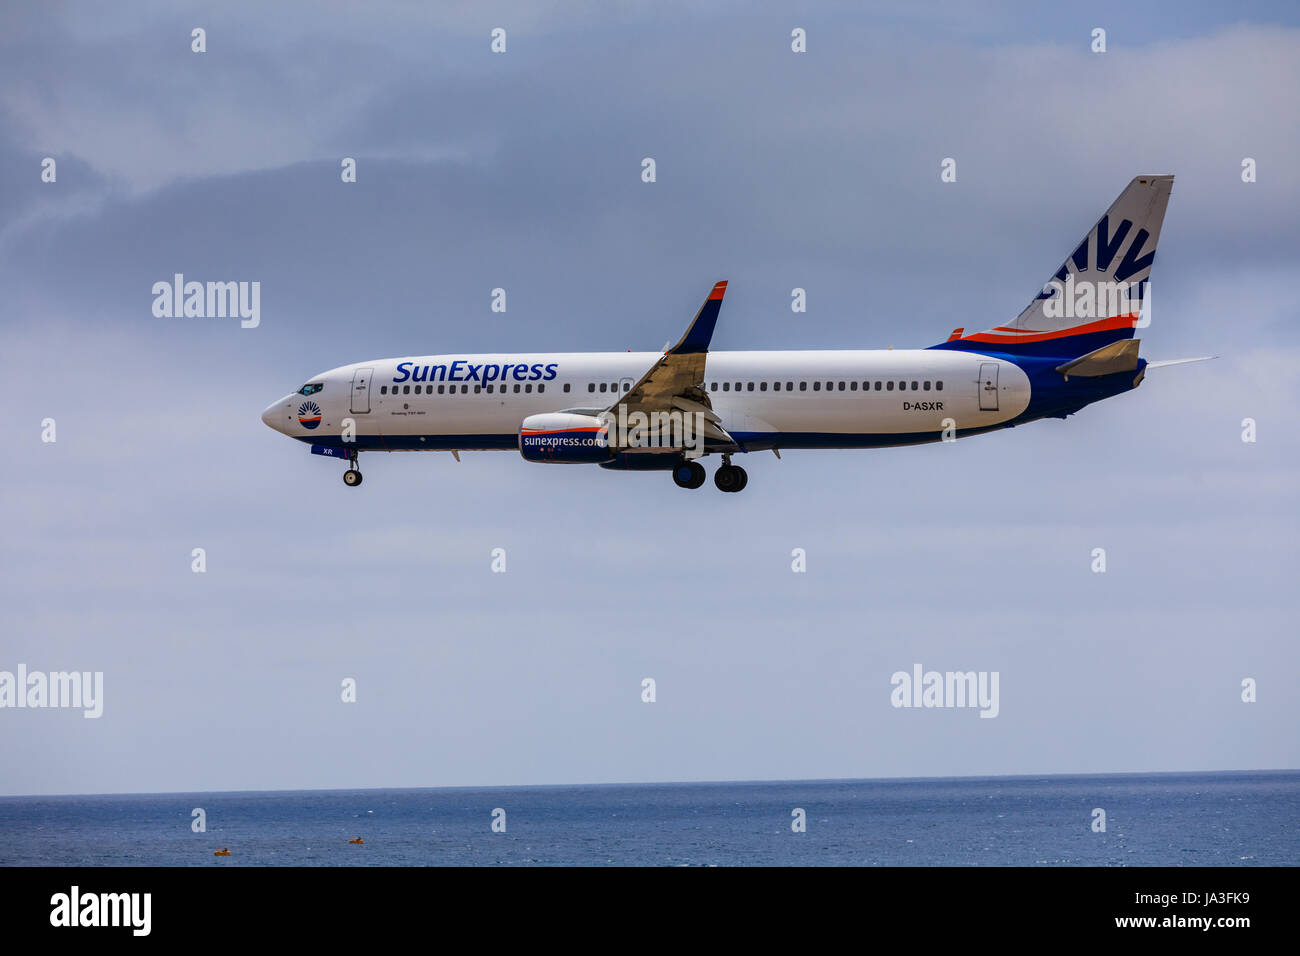 ARECIFE, Spagna - Aprile 15 2017: Boeing 737 - 800 di SunExpress con la registrazione D-ASXR in atterraggio a Lanzarote Airport Foto Stock